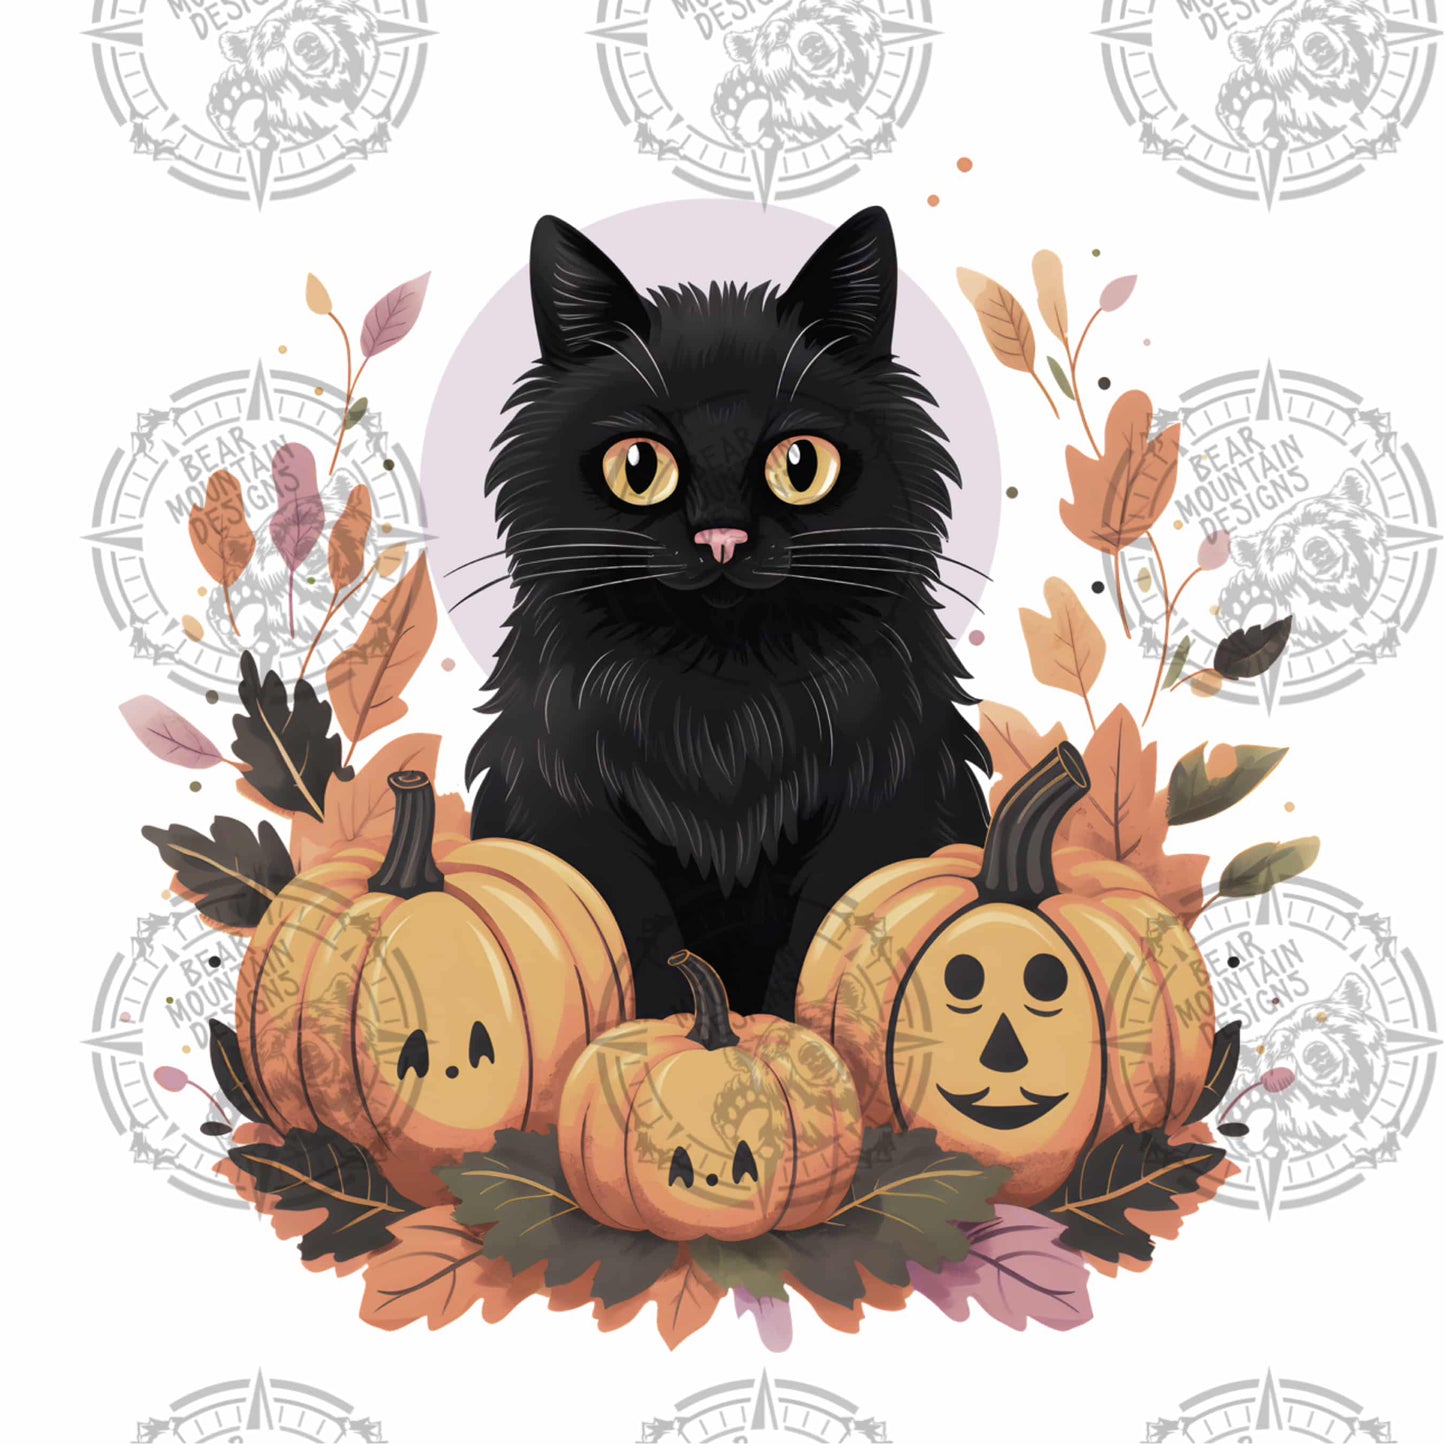 Black Cat & Pumpkins